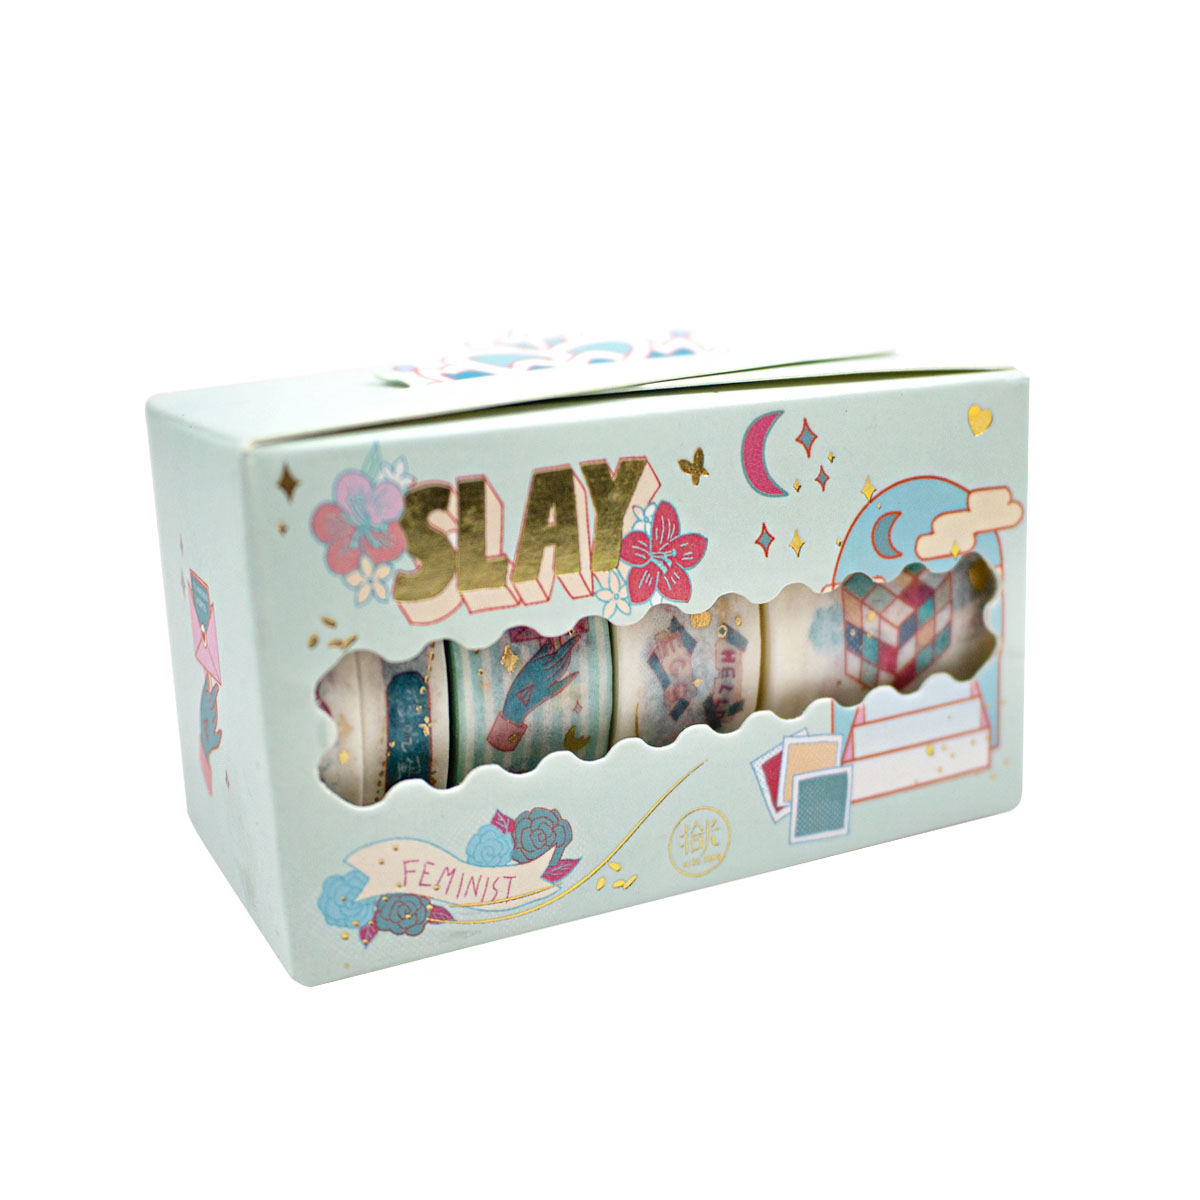 Set de 5 Washi Tape (Cinta Adhesiva con diseño) en caja MPC55